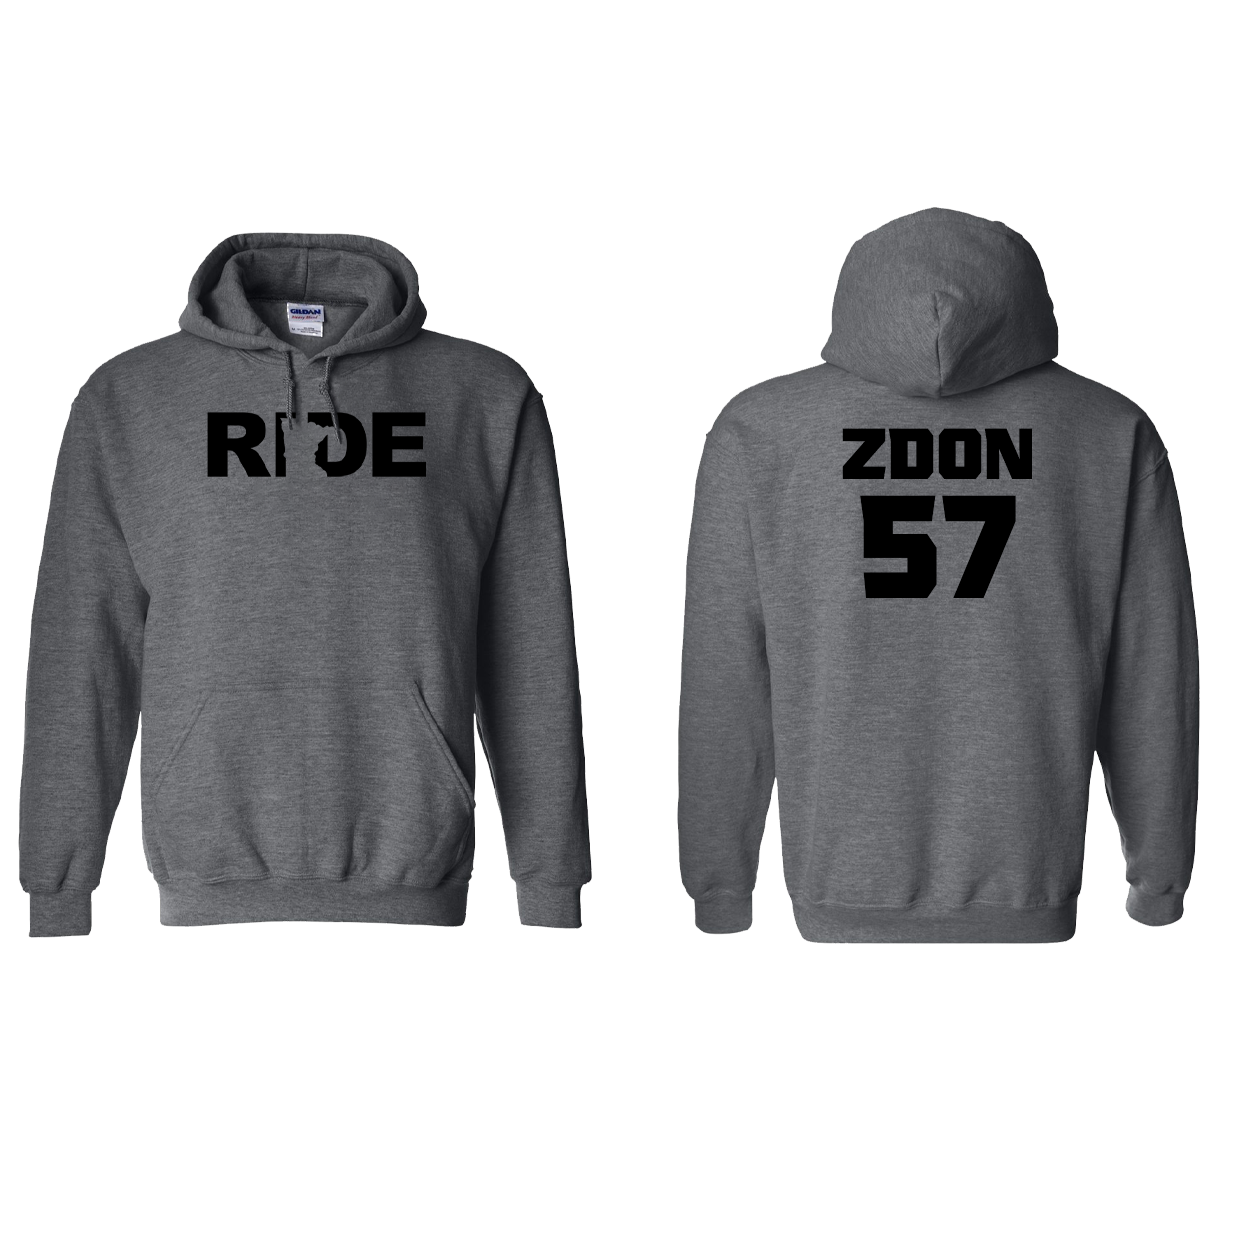 FXR BMX Race Team Classic Athlete Support Sweatshirt A. ZDON #57 Dark Heather (Black Logo)